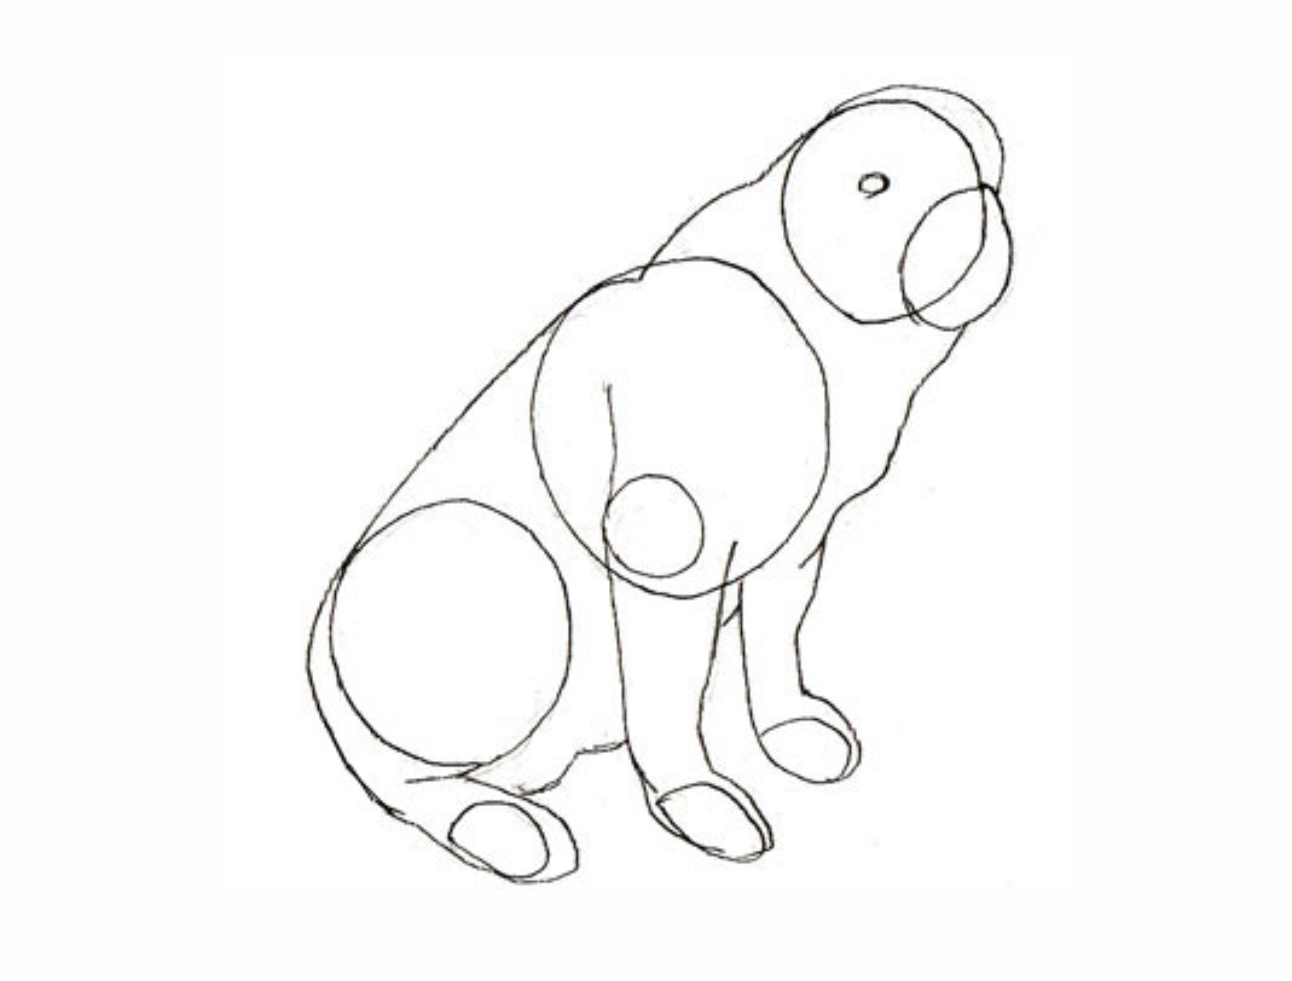 Урок рисования: Как нарисовать собаку поэтапно карандашом. 3 этап.